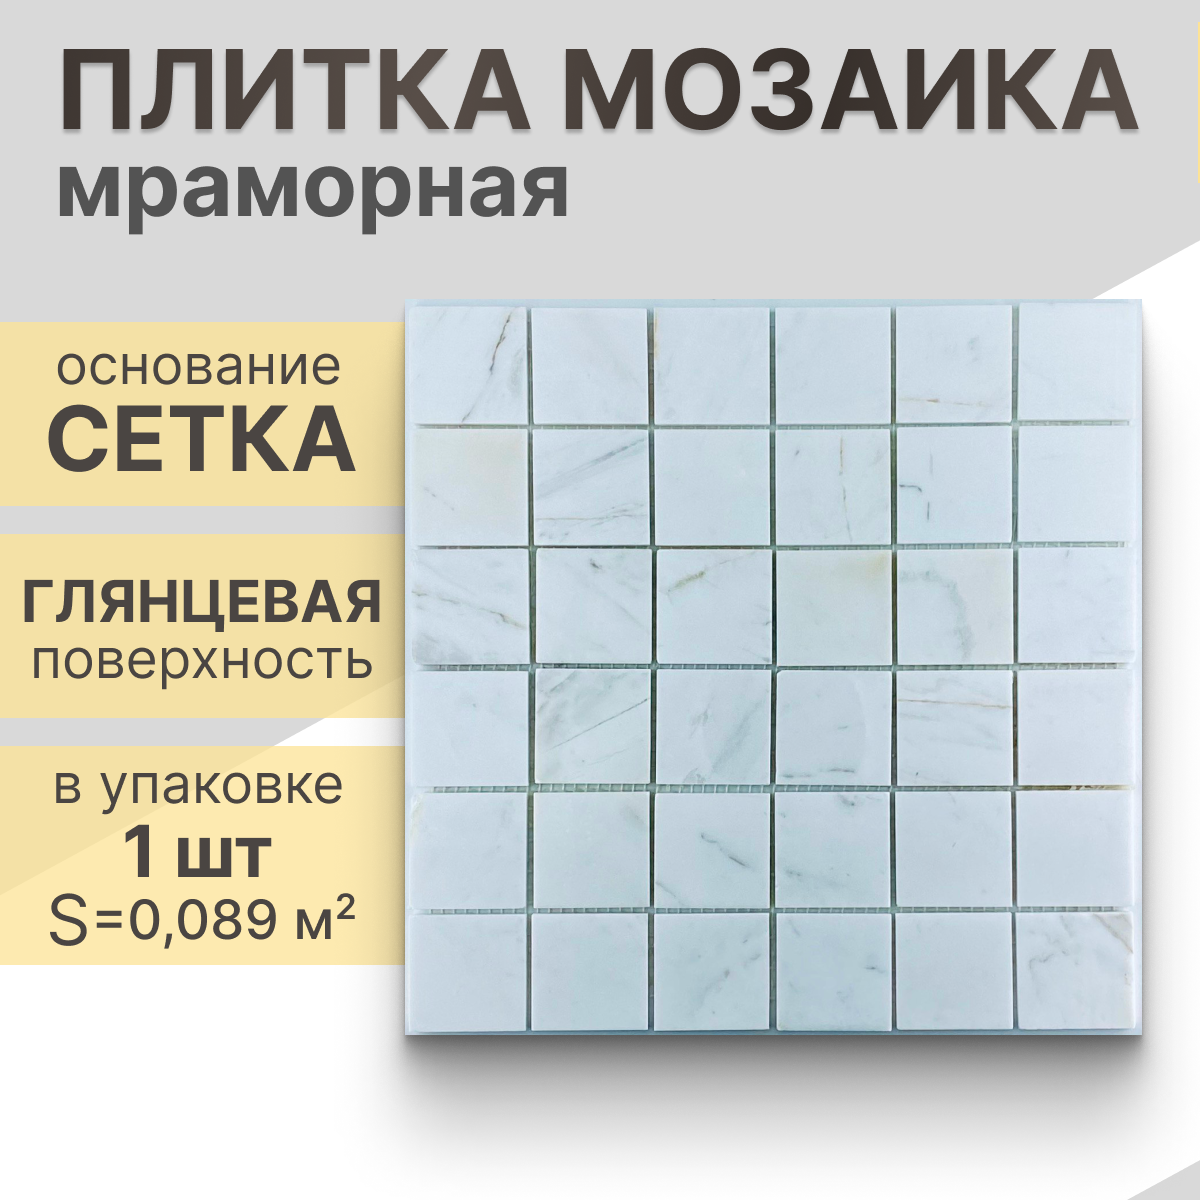 Мозаика (мрамор) NS mosaic Kp-759 29.8X29,8 см 1 шт (0,089 м²)